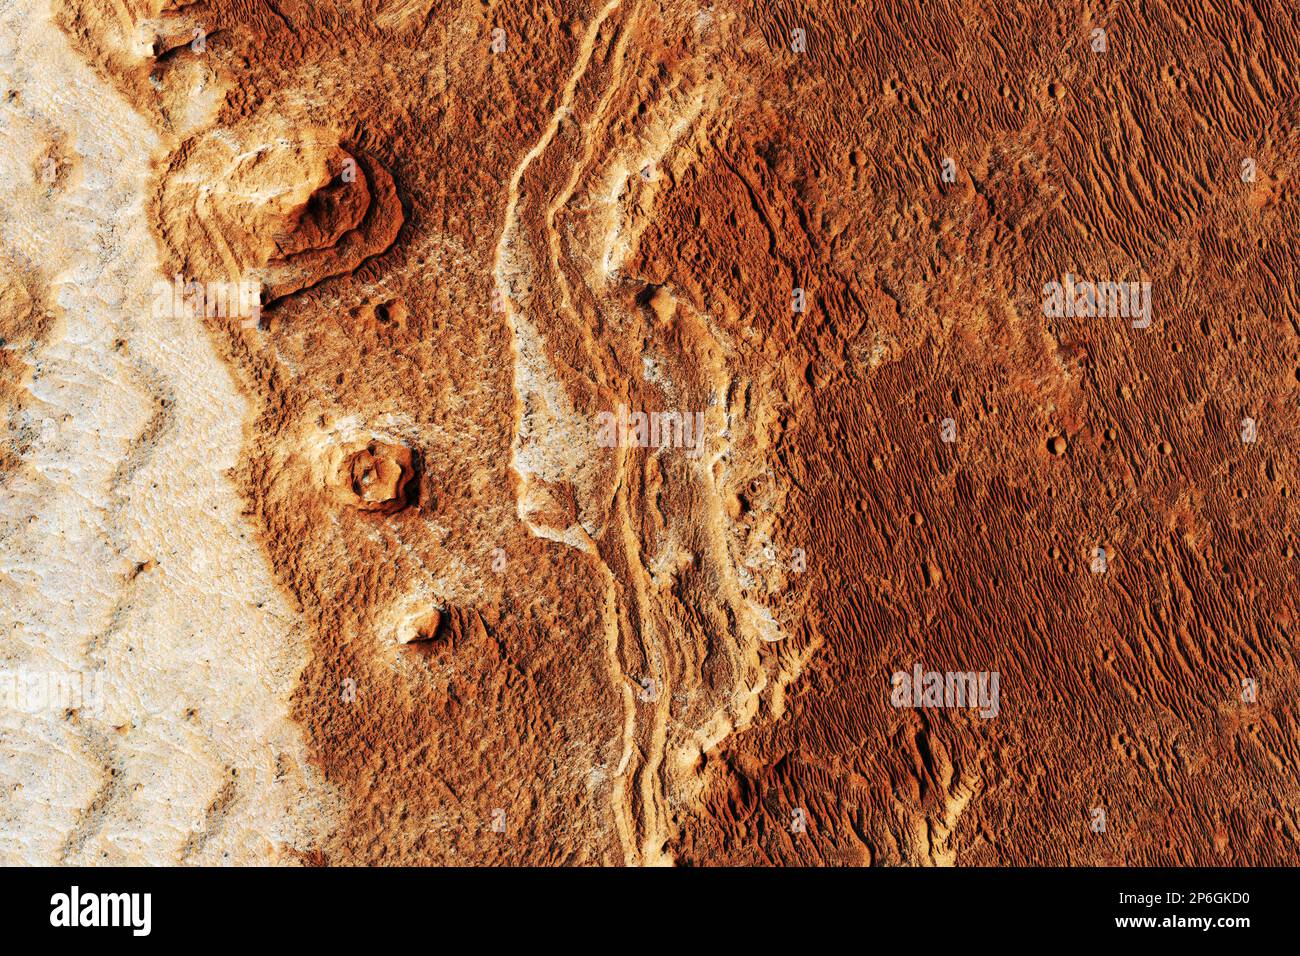 Surface de la planète Mars. Éléments de cette image fournissant NASA. Photo de haute qualité Banque D'Images